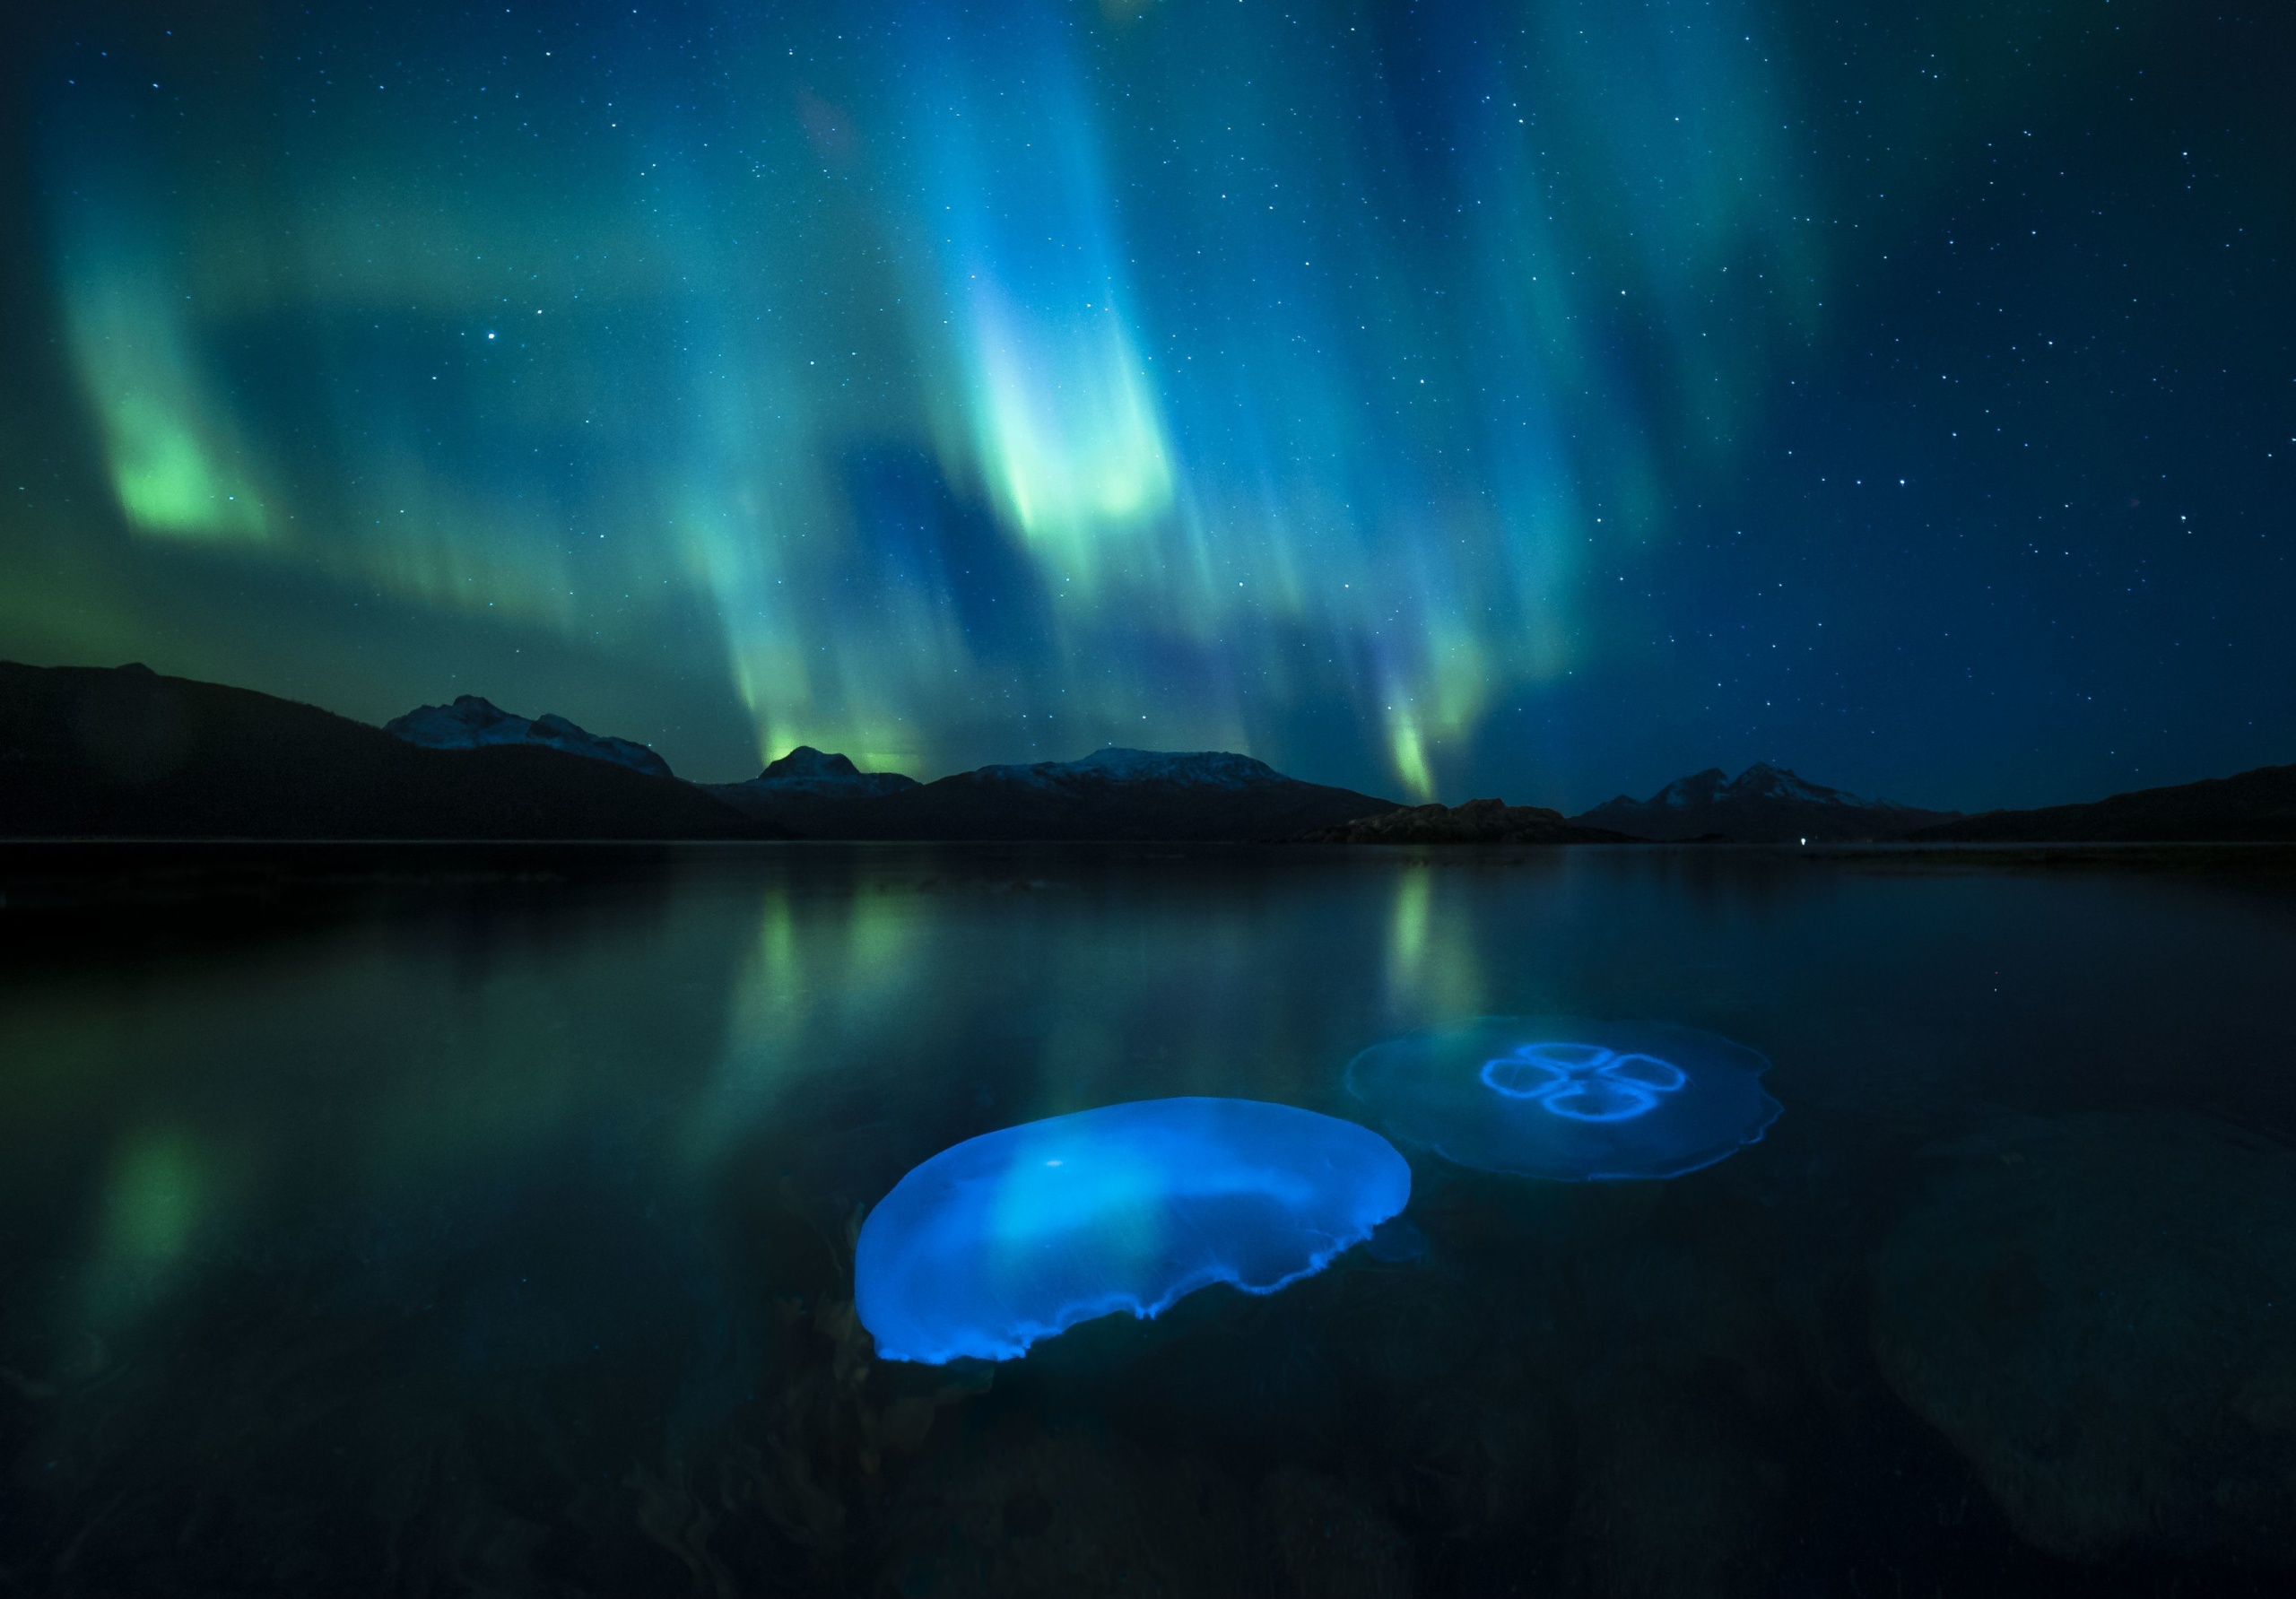 Holdmedúzák százai a norvégiai Tromsø közelében található fjord hűvös vizében, a sarki fény (aurora borealis) által megvilágítva. A fotót készítő Audun Rikardse egy saját készítésű, vízálló házban rejtette el a fotós felszerelését, így tudta megörökíteni a nem mindennapi látványt.